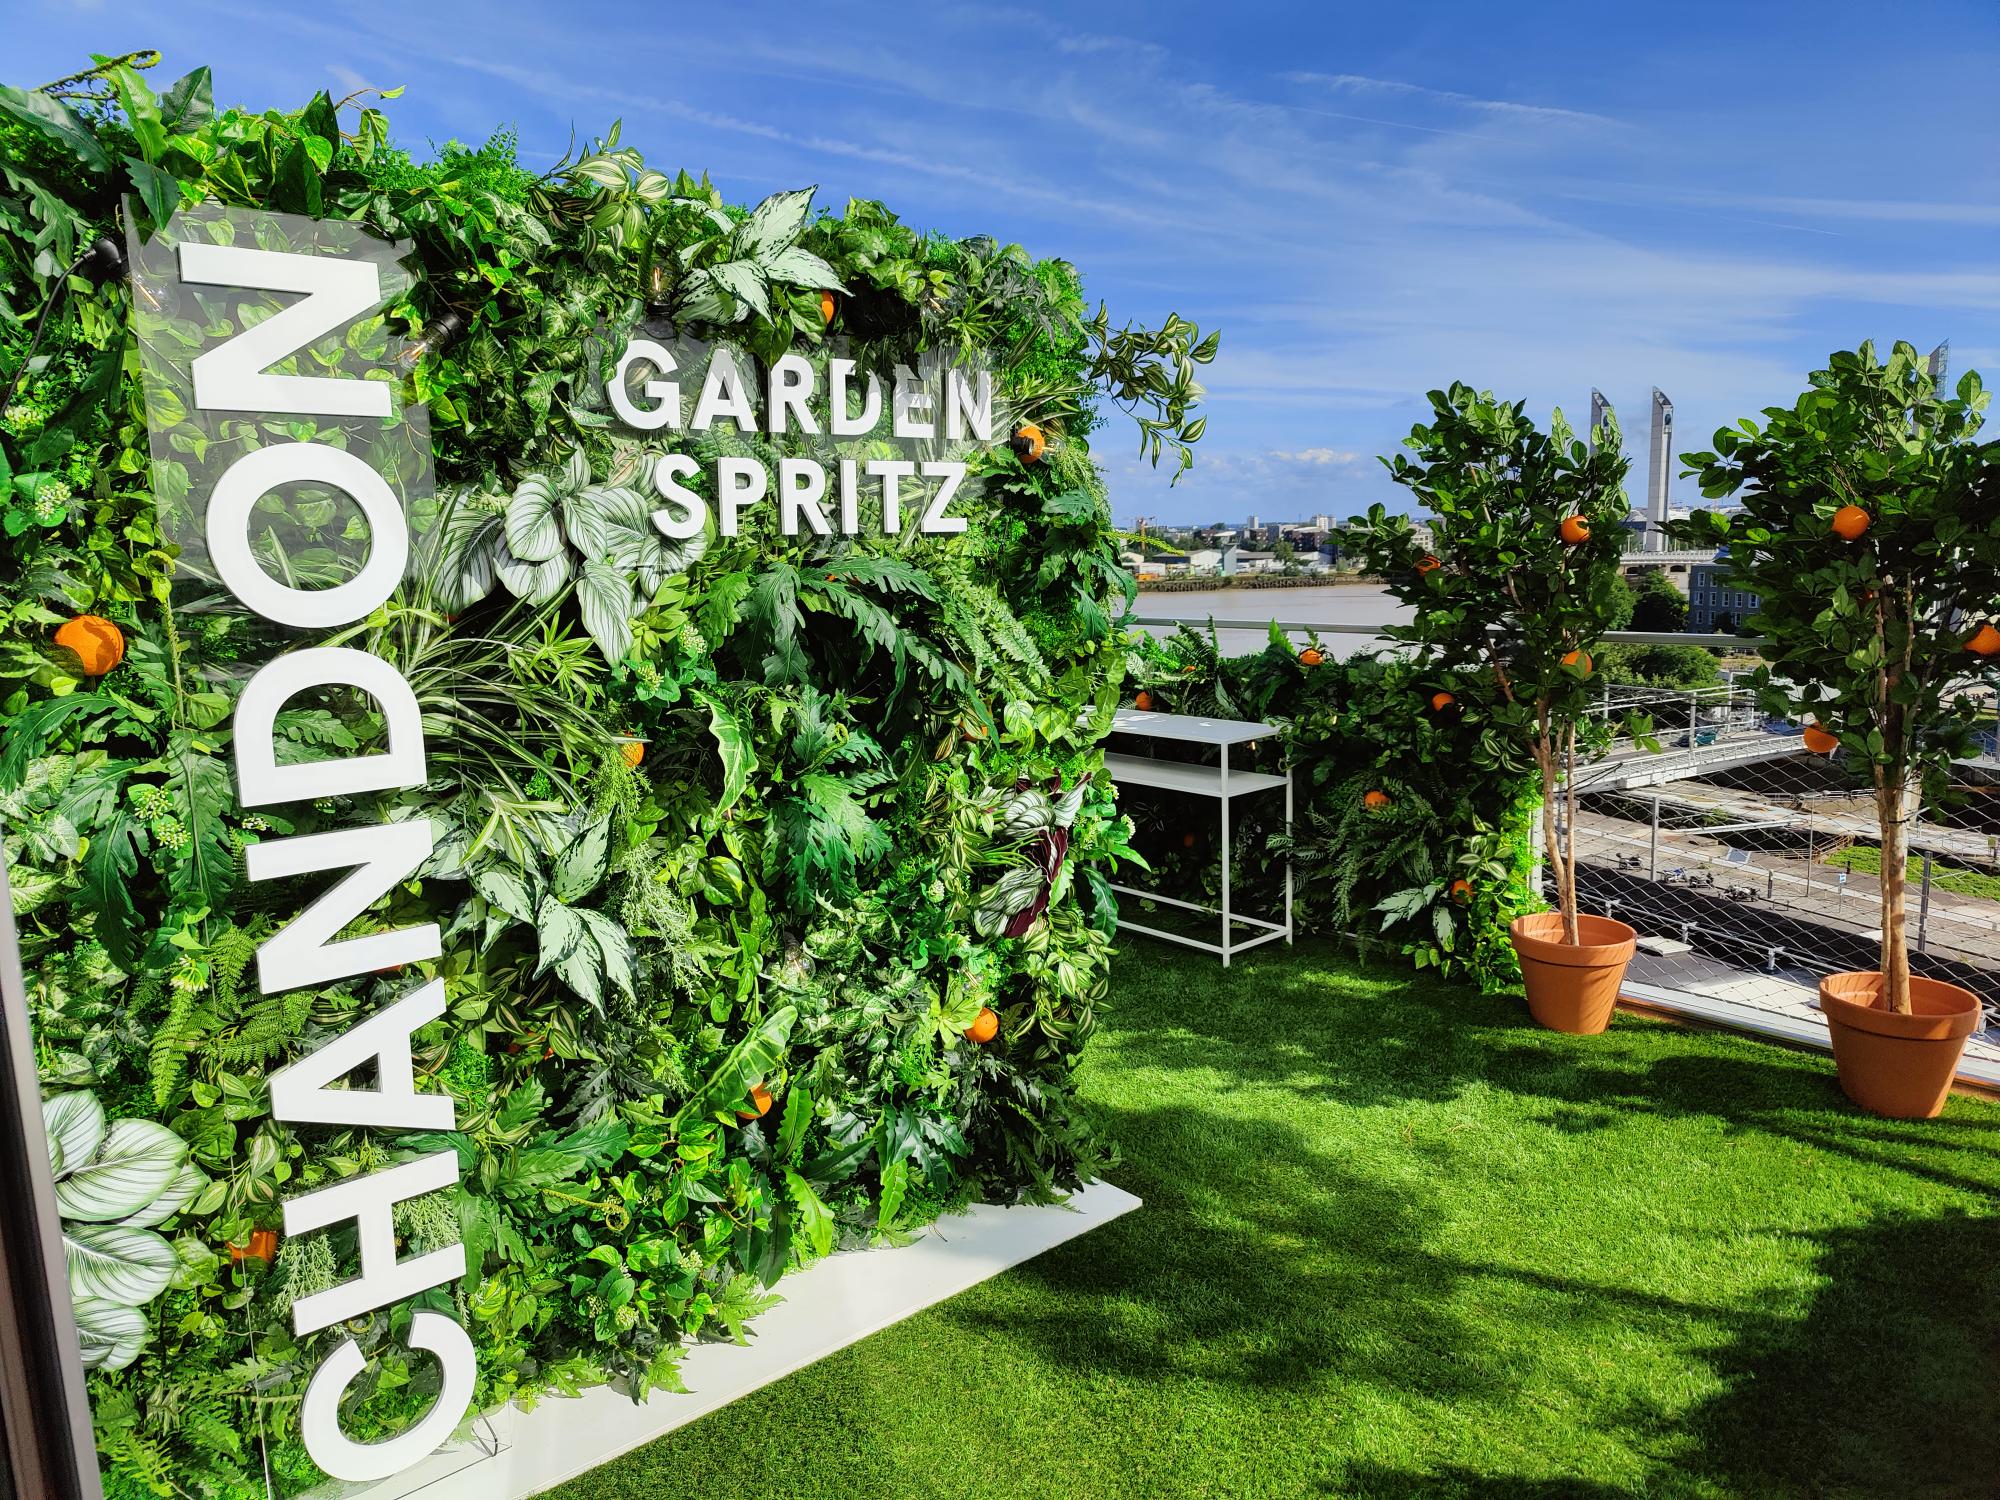 Place au Chandon Garden Spritz, nouvelle boisson de l'été - The Good Life